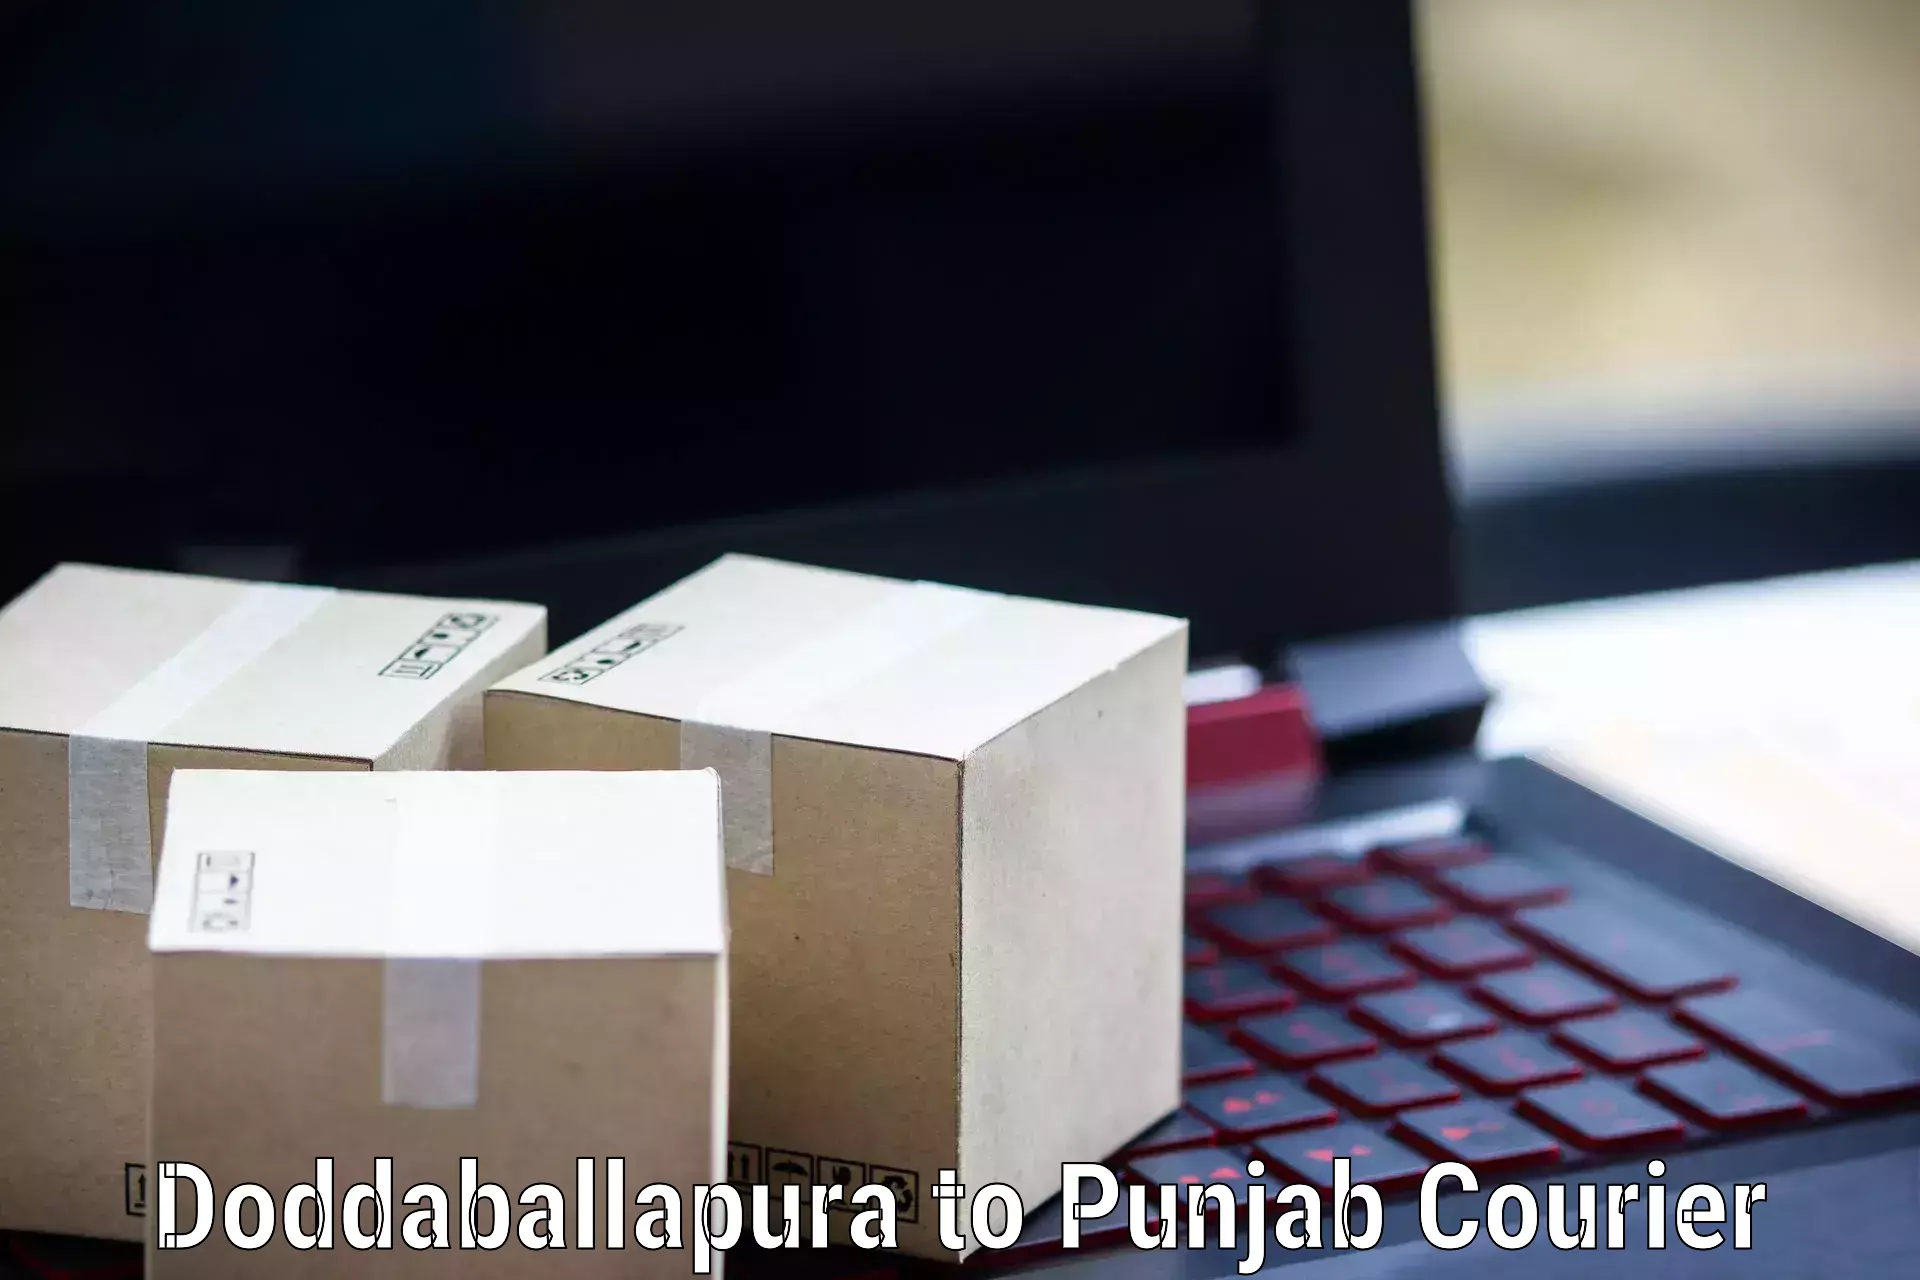 Nationwide delivery network Doddaballapura to Bagha Purana